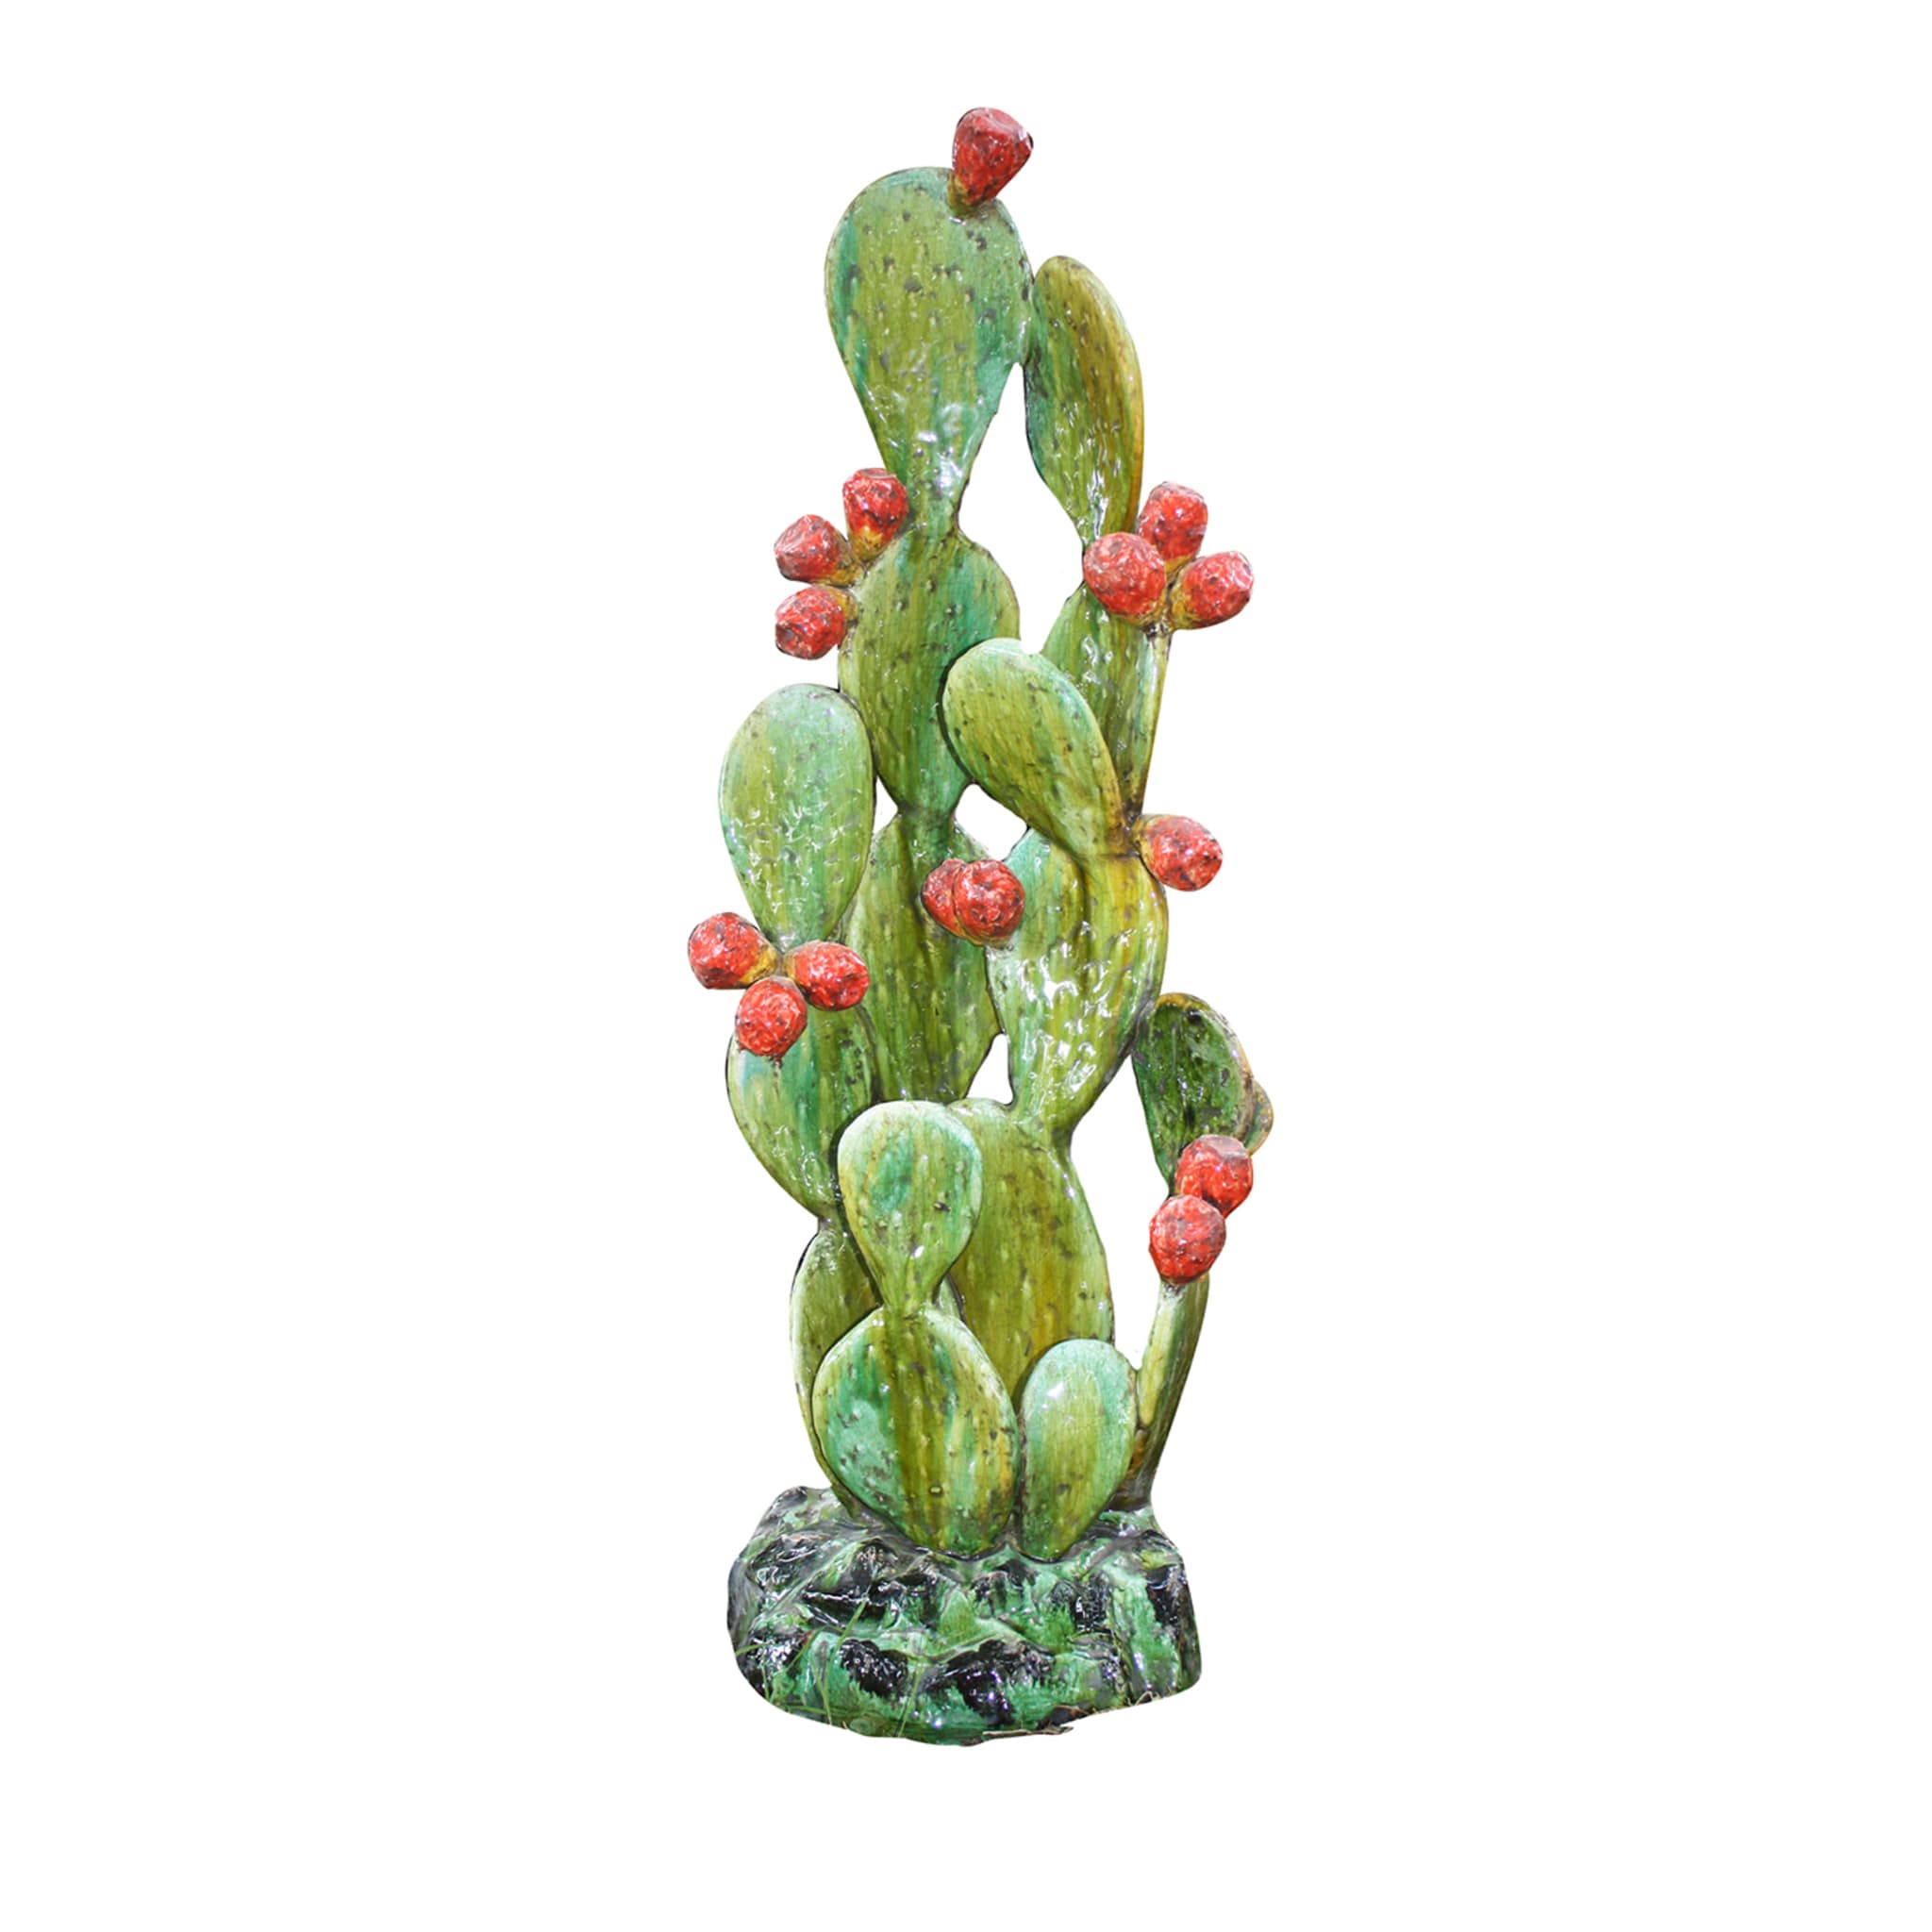 Kaktusfeige Polychromie Skulptur - Hauptansicht